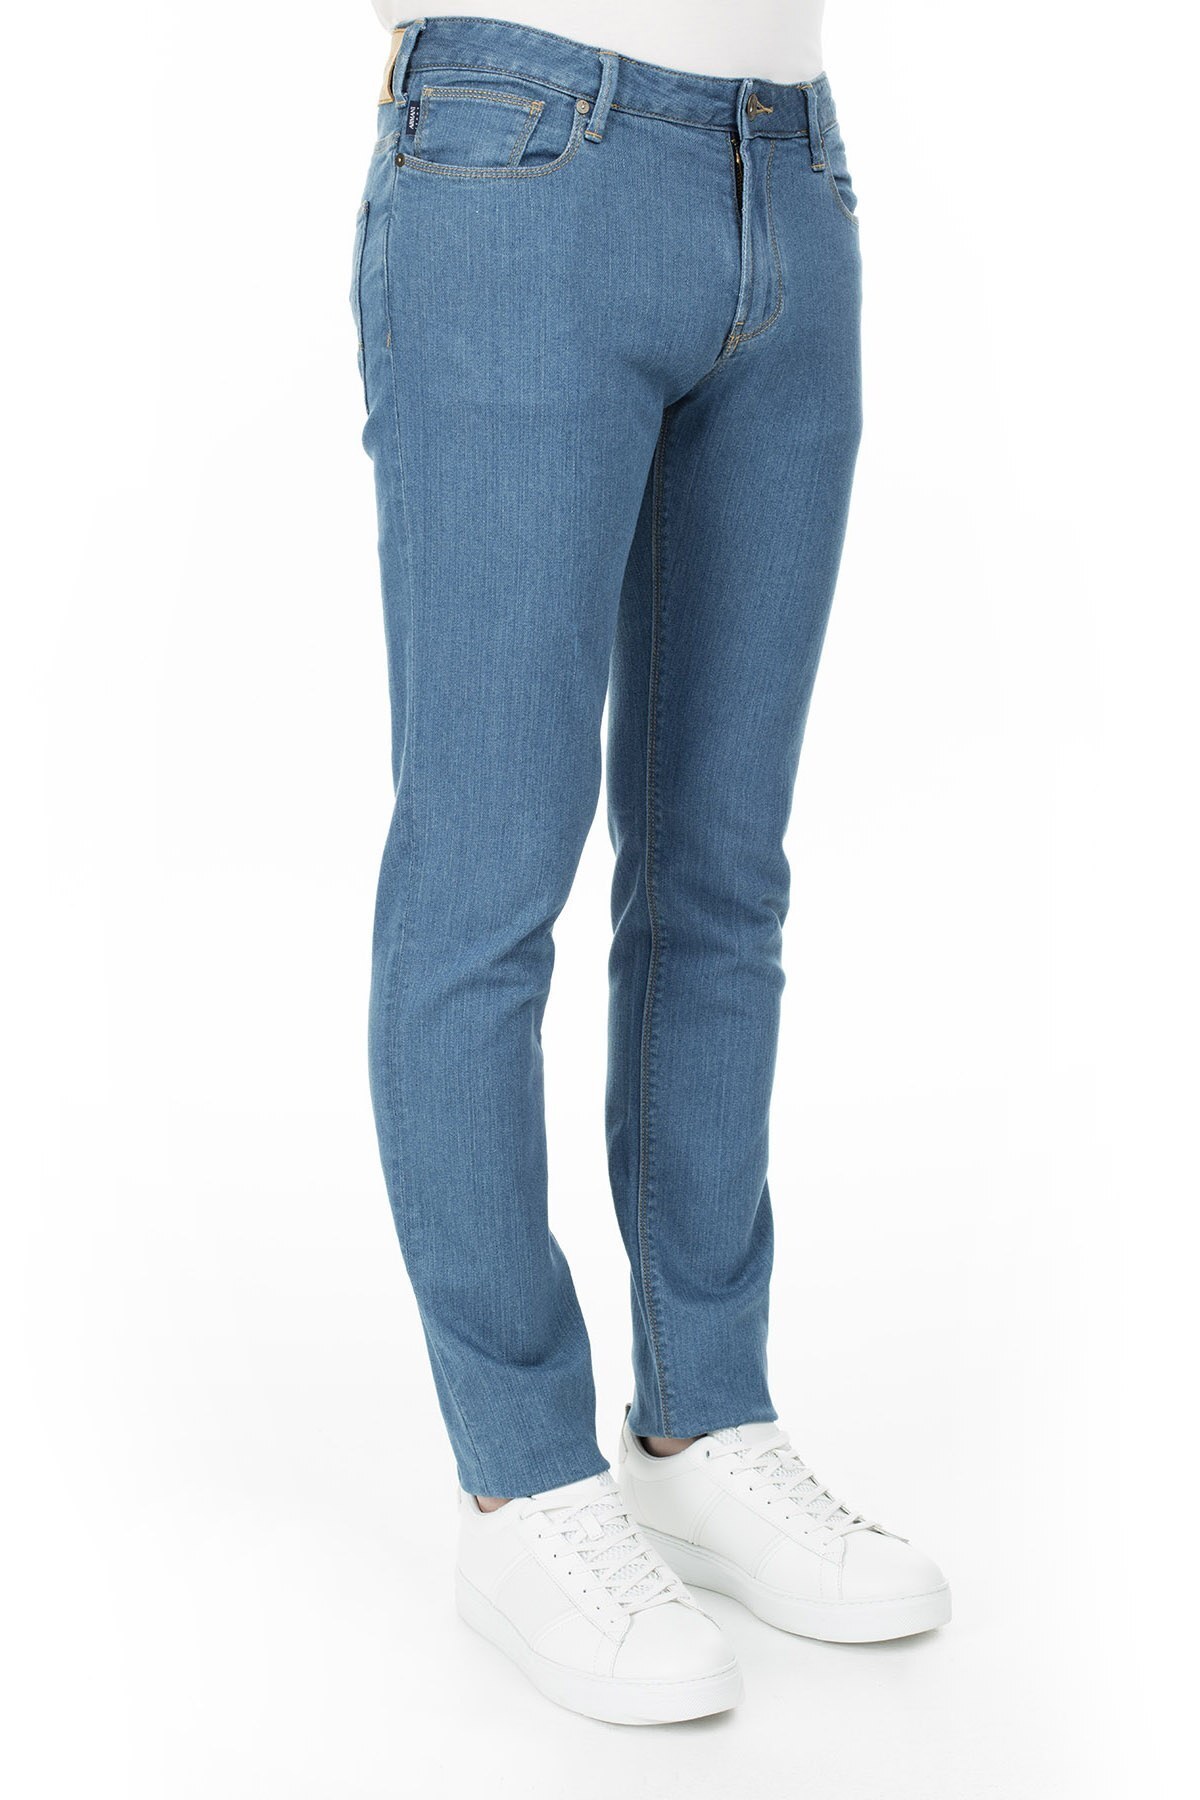 Armani J06 Jeans Erkek Kot Pantolon 3Y6J06 6DBQZ 1500 MAVİ